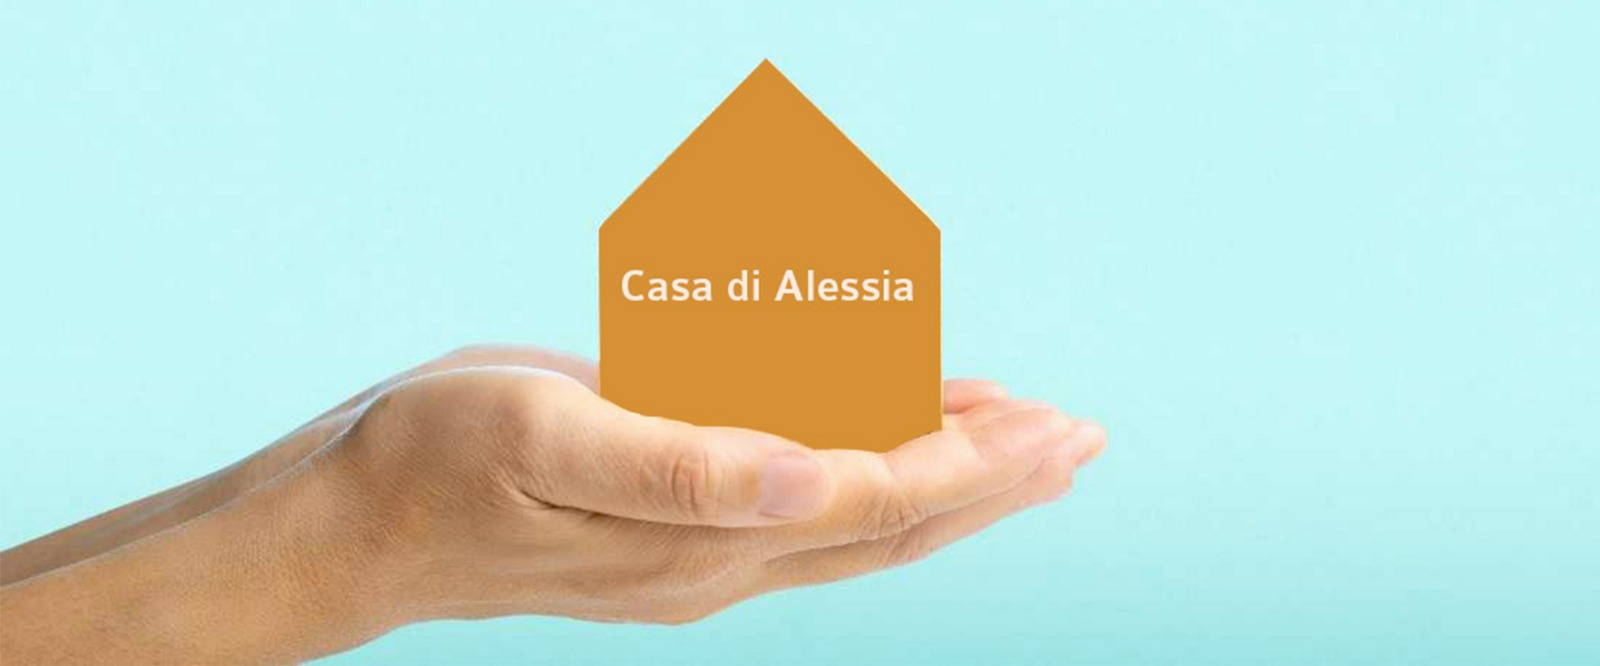 La Casa di Alessia